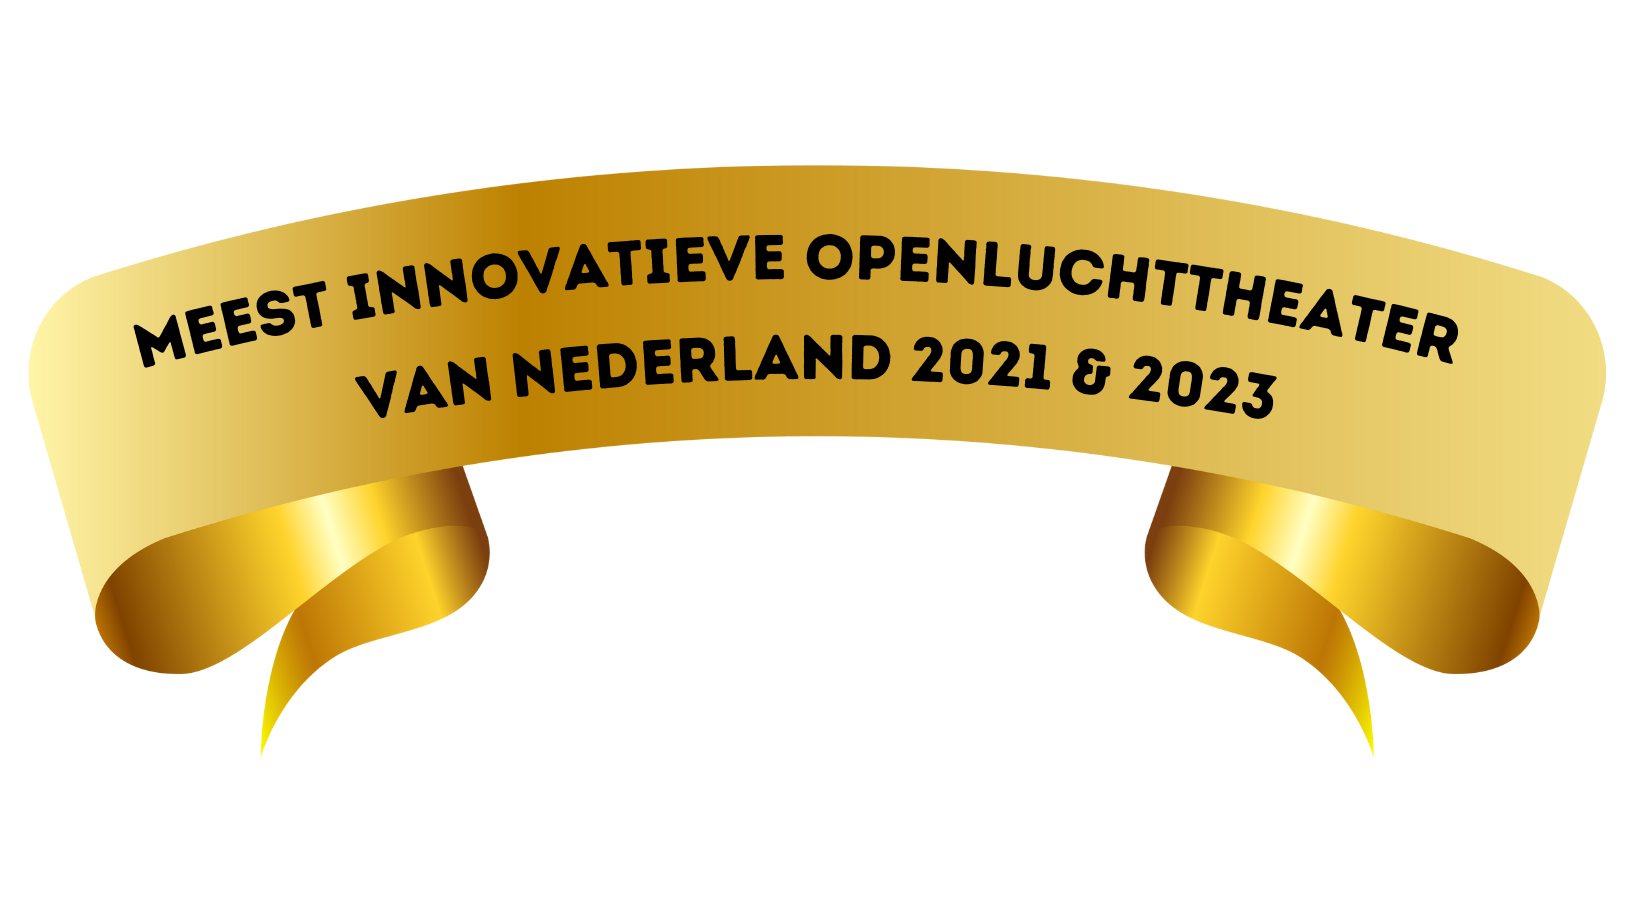 Meest innovatieve openluchttheater van Nederland 2021 (Facebook-omslagfoto)